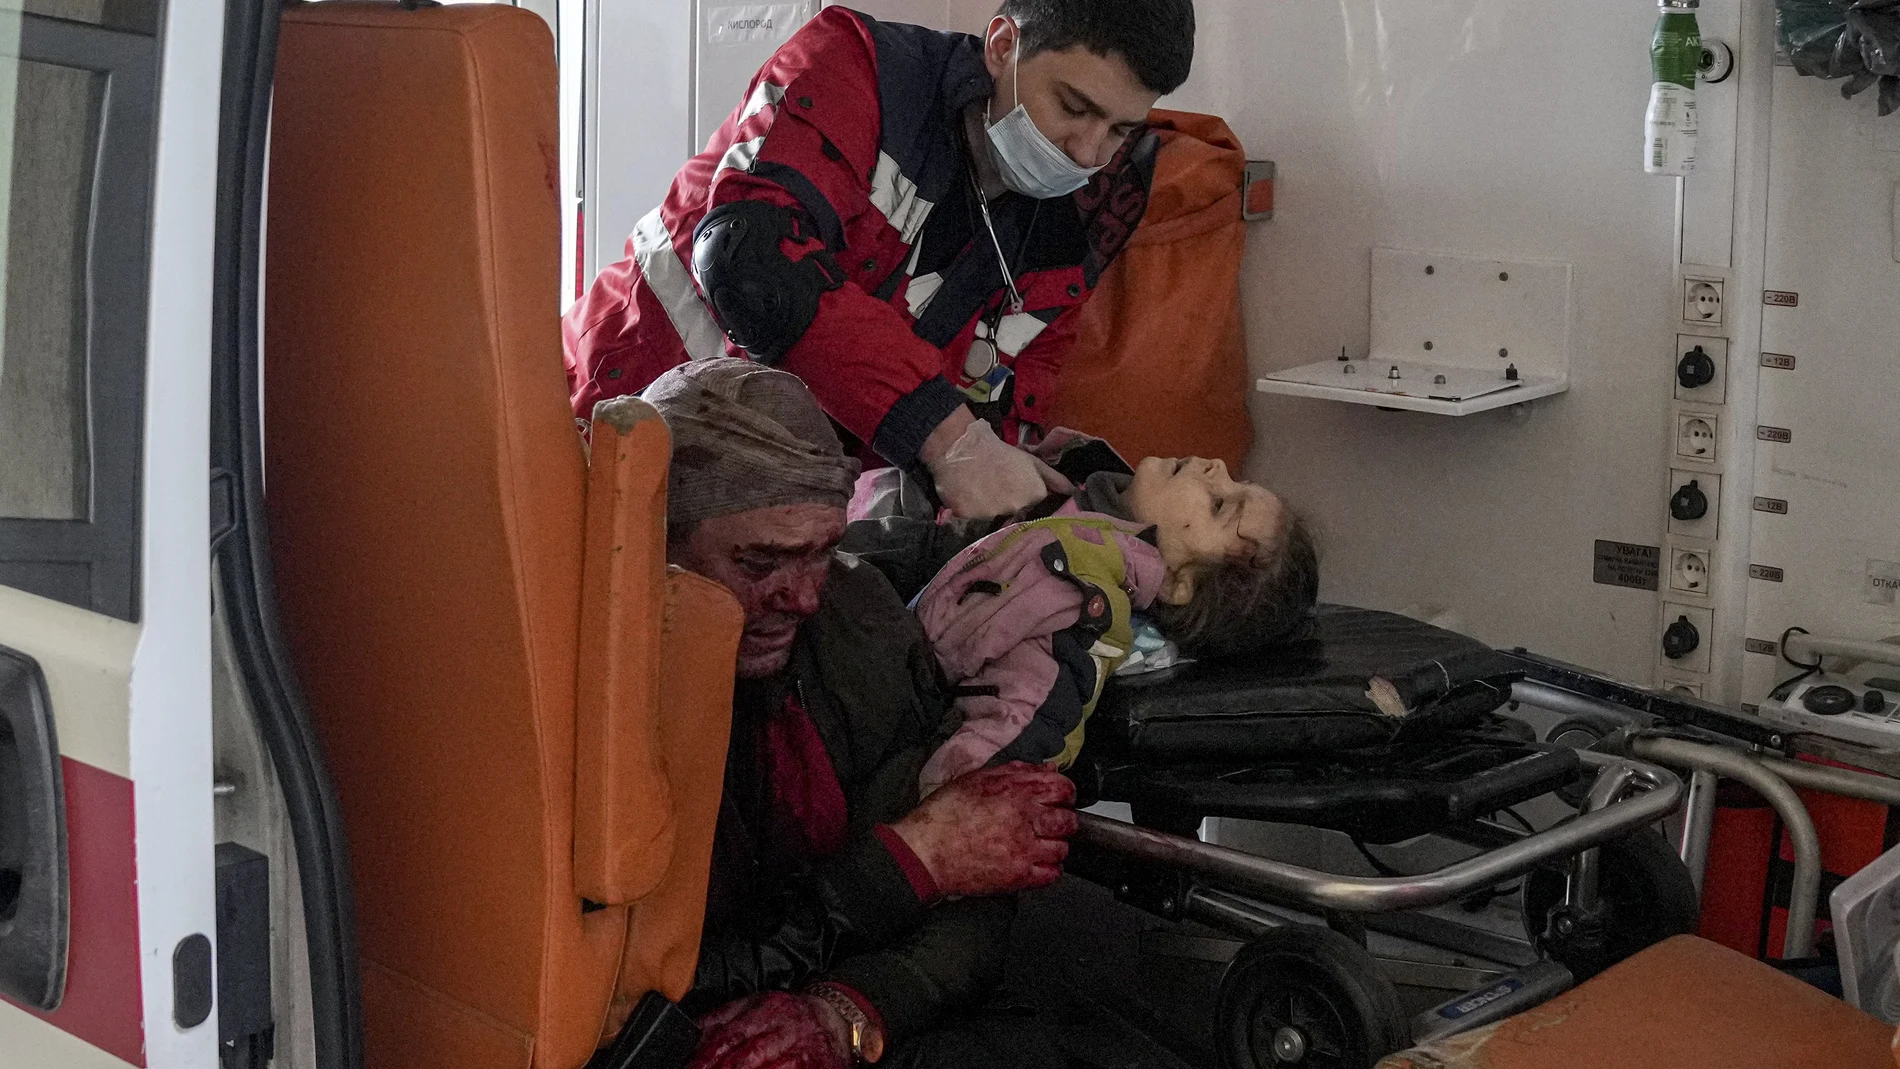 El paramédico de una ambulancia reanima a una niña herida durante un bombardeo en una zona residencial del este de Ucrania